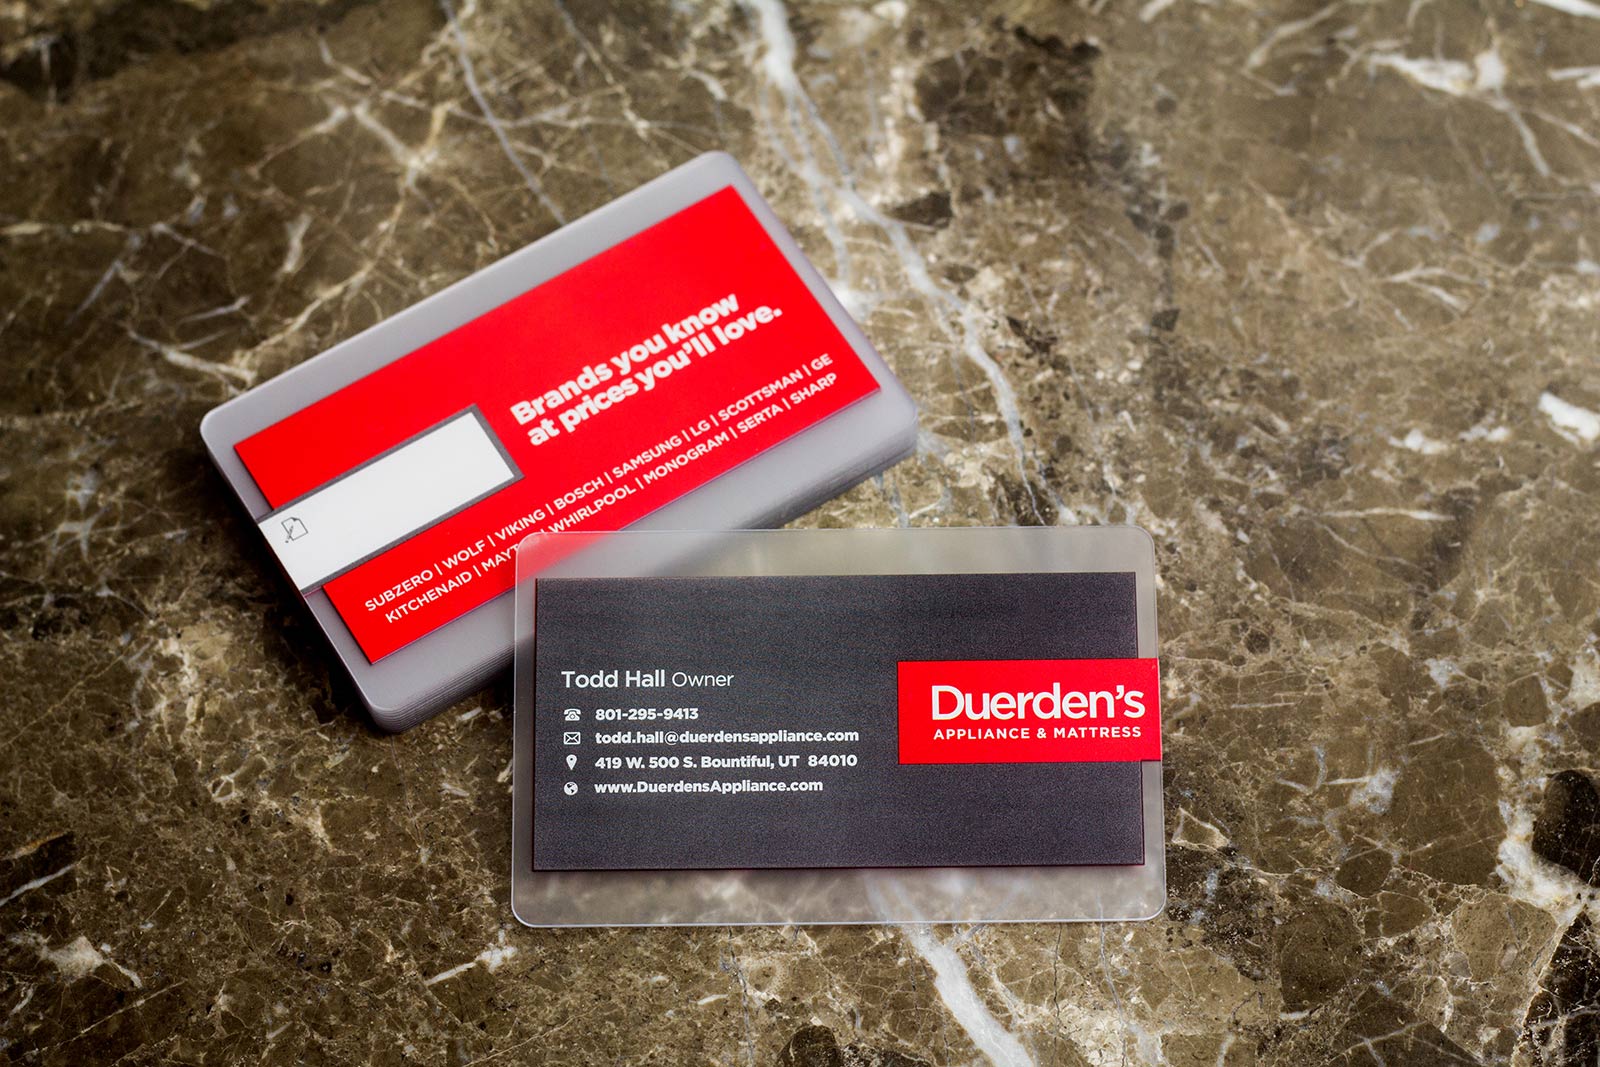 Duerden's Appliance & Mattress Business Cards